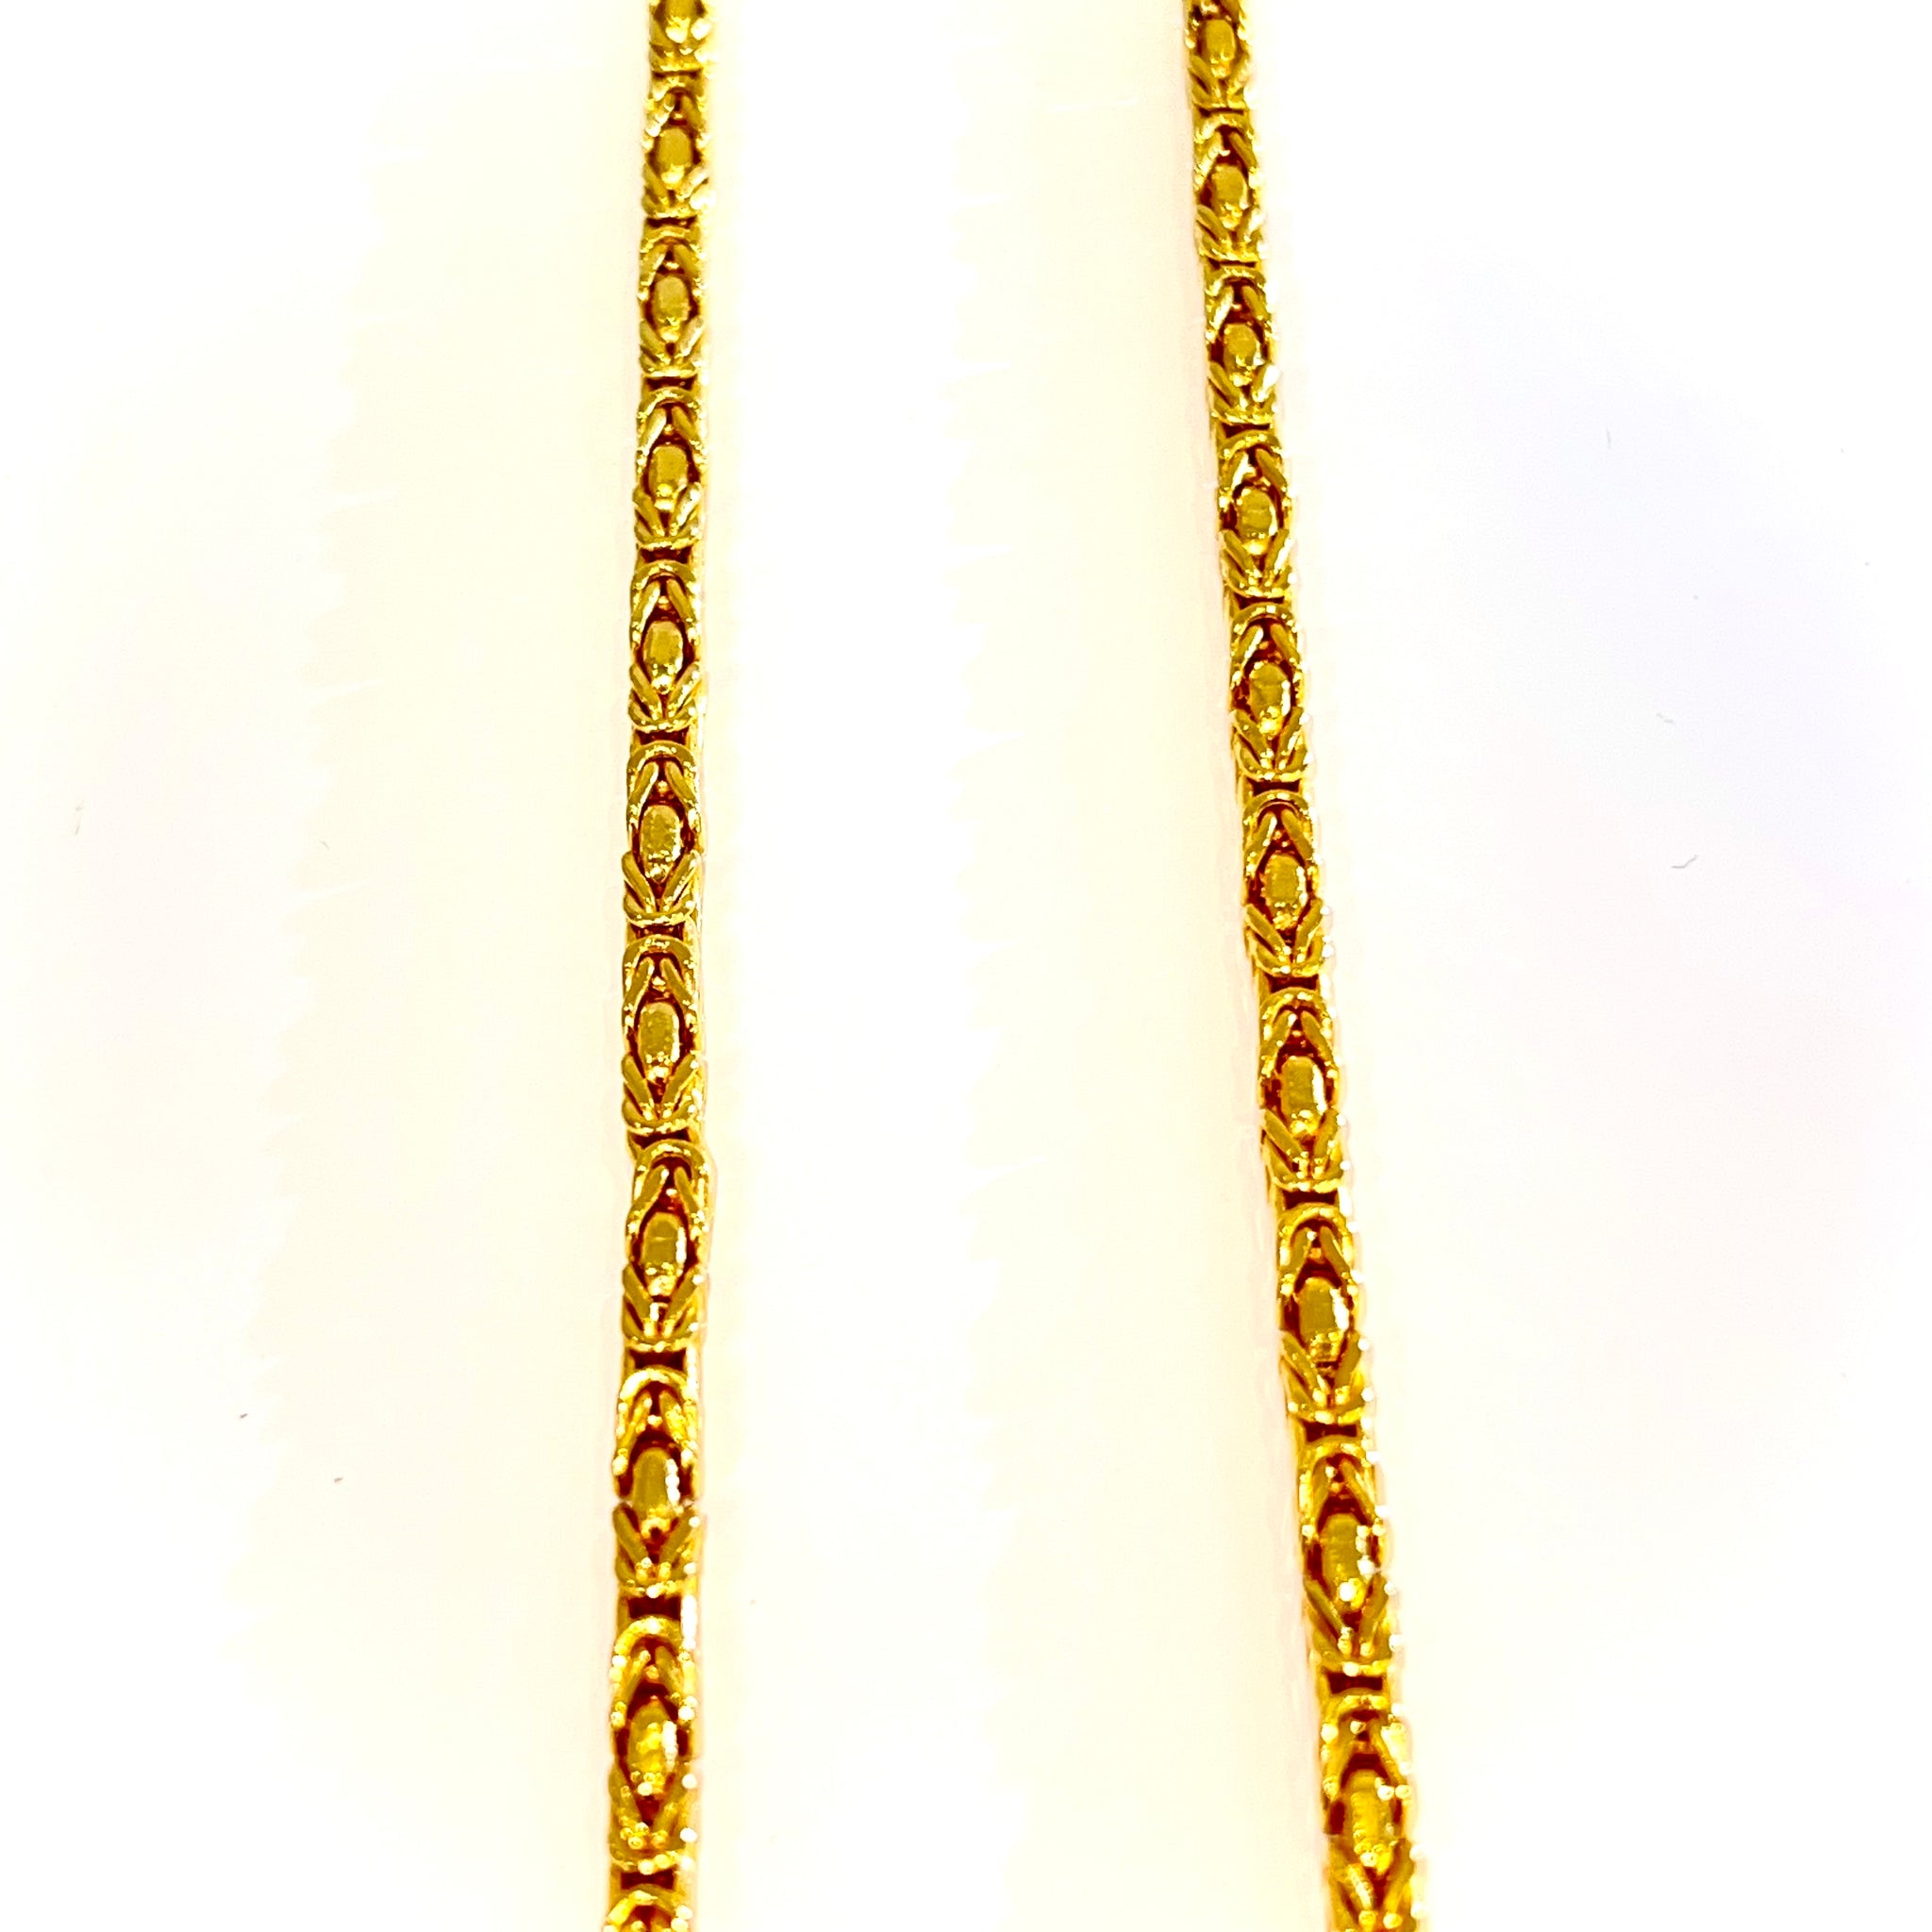 Kingschain - 14 carat gold - 65cm / 3.5mm